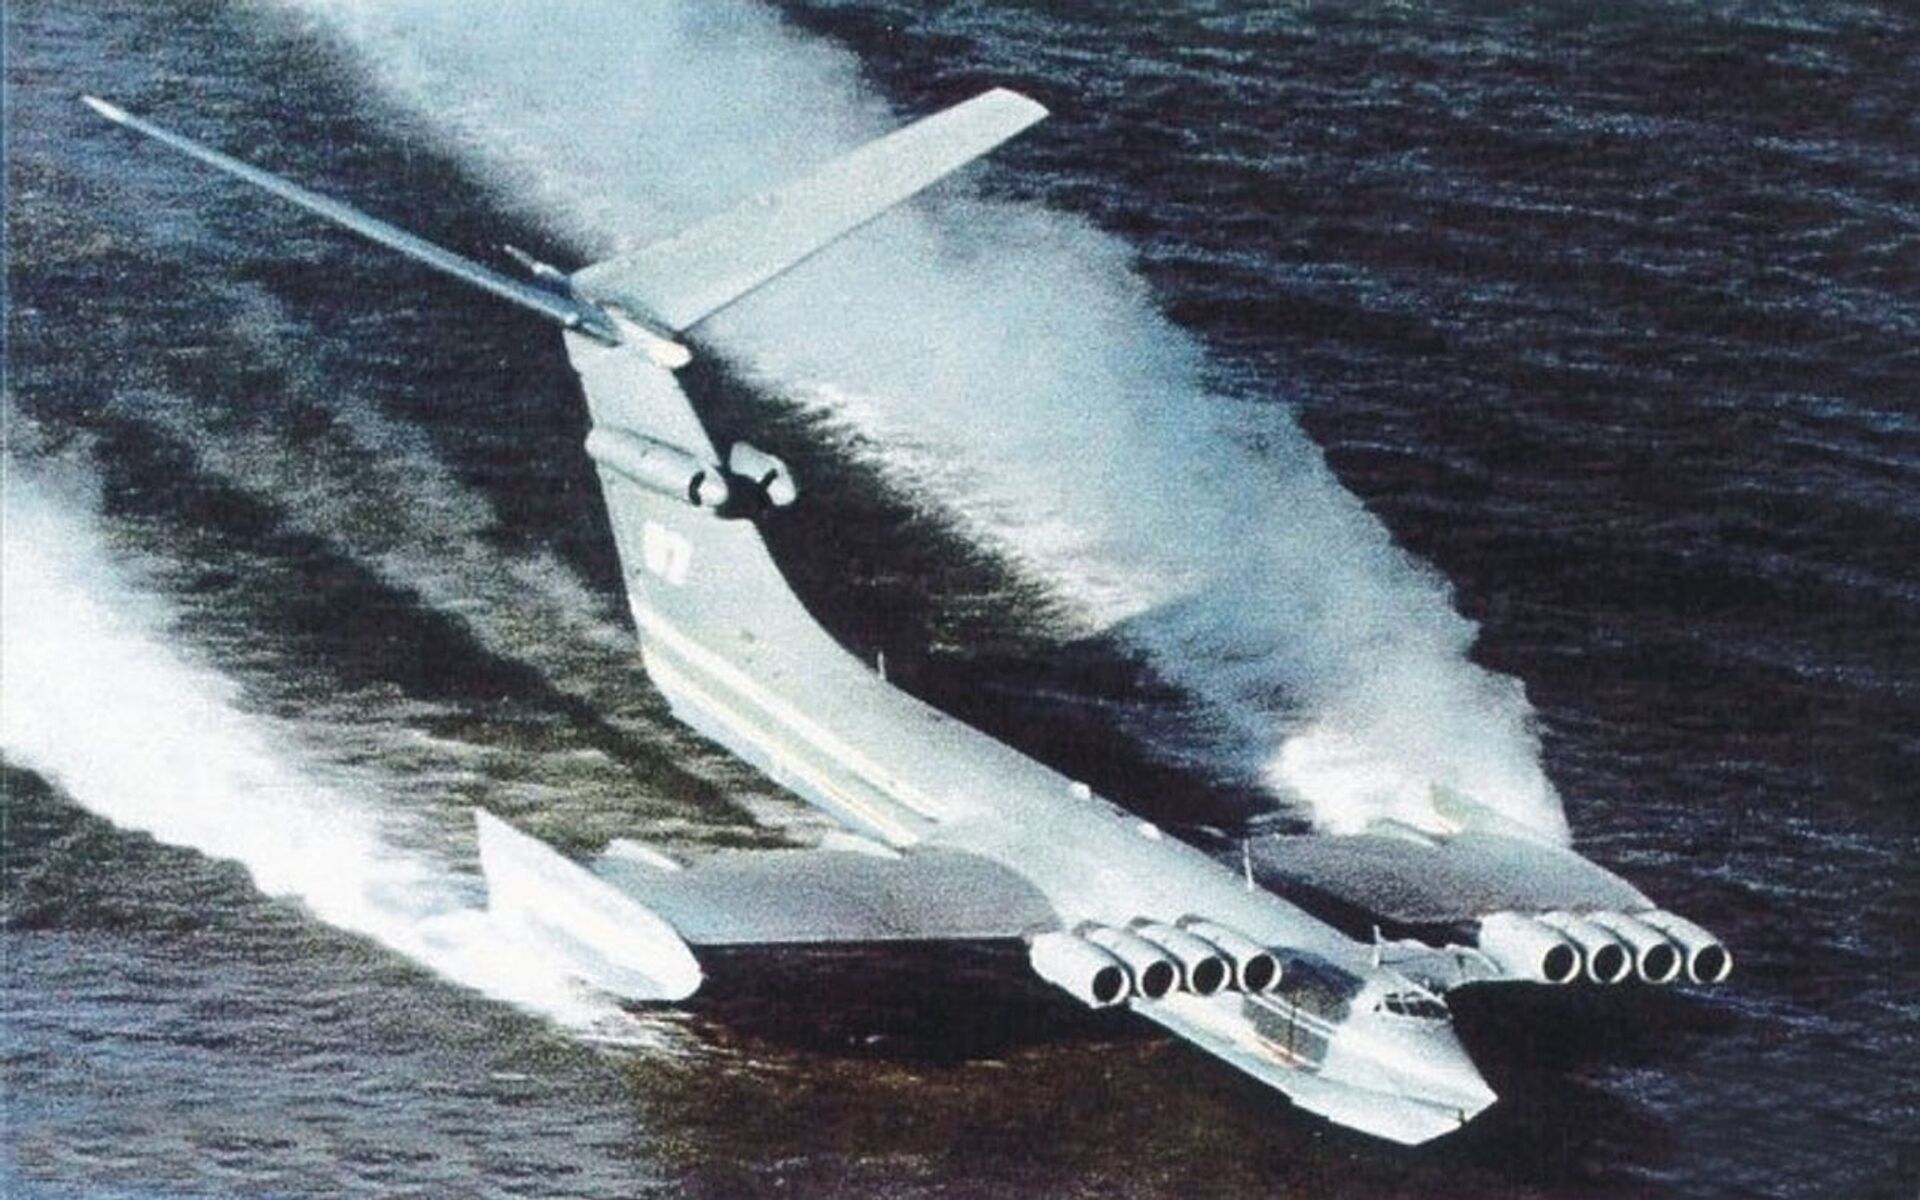 Pentágono pretende construir ecranoplano inspirado em 'monstro marinho voador' soviético - Sputnik Brasil, 1920, 29.08.2021